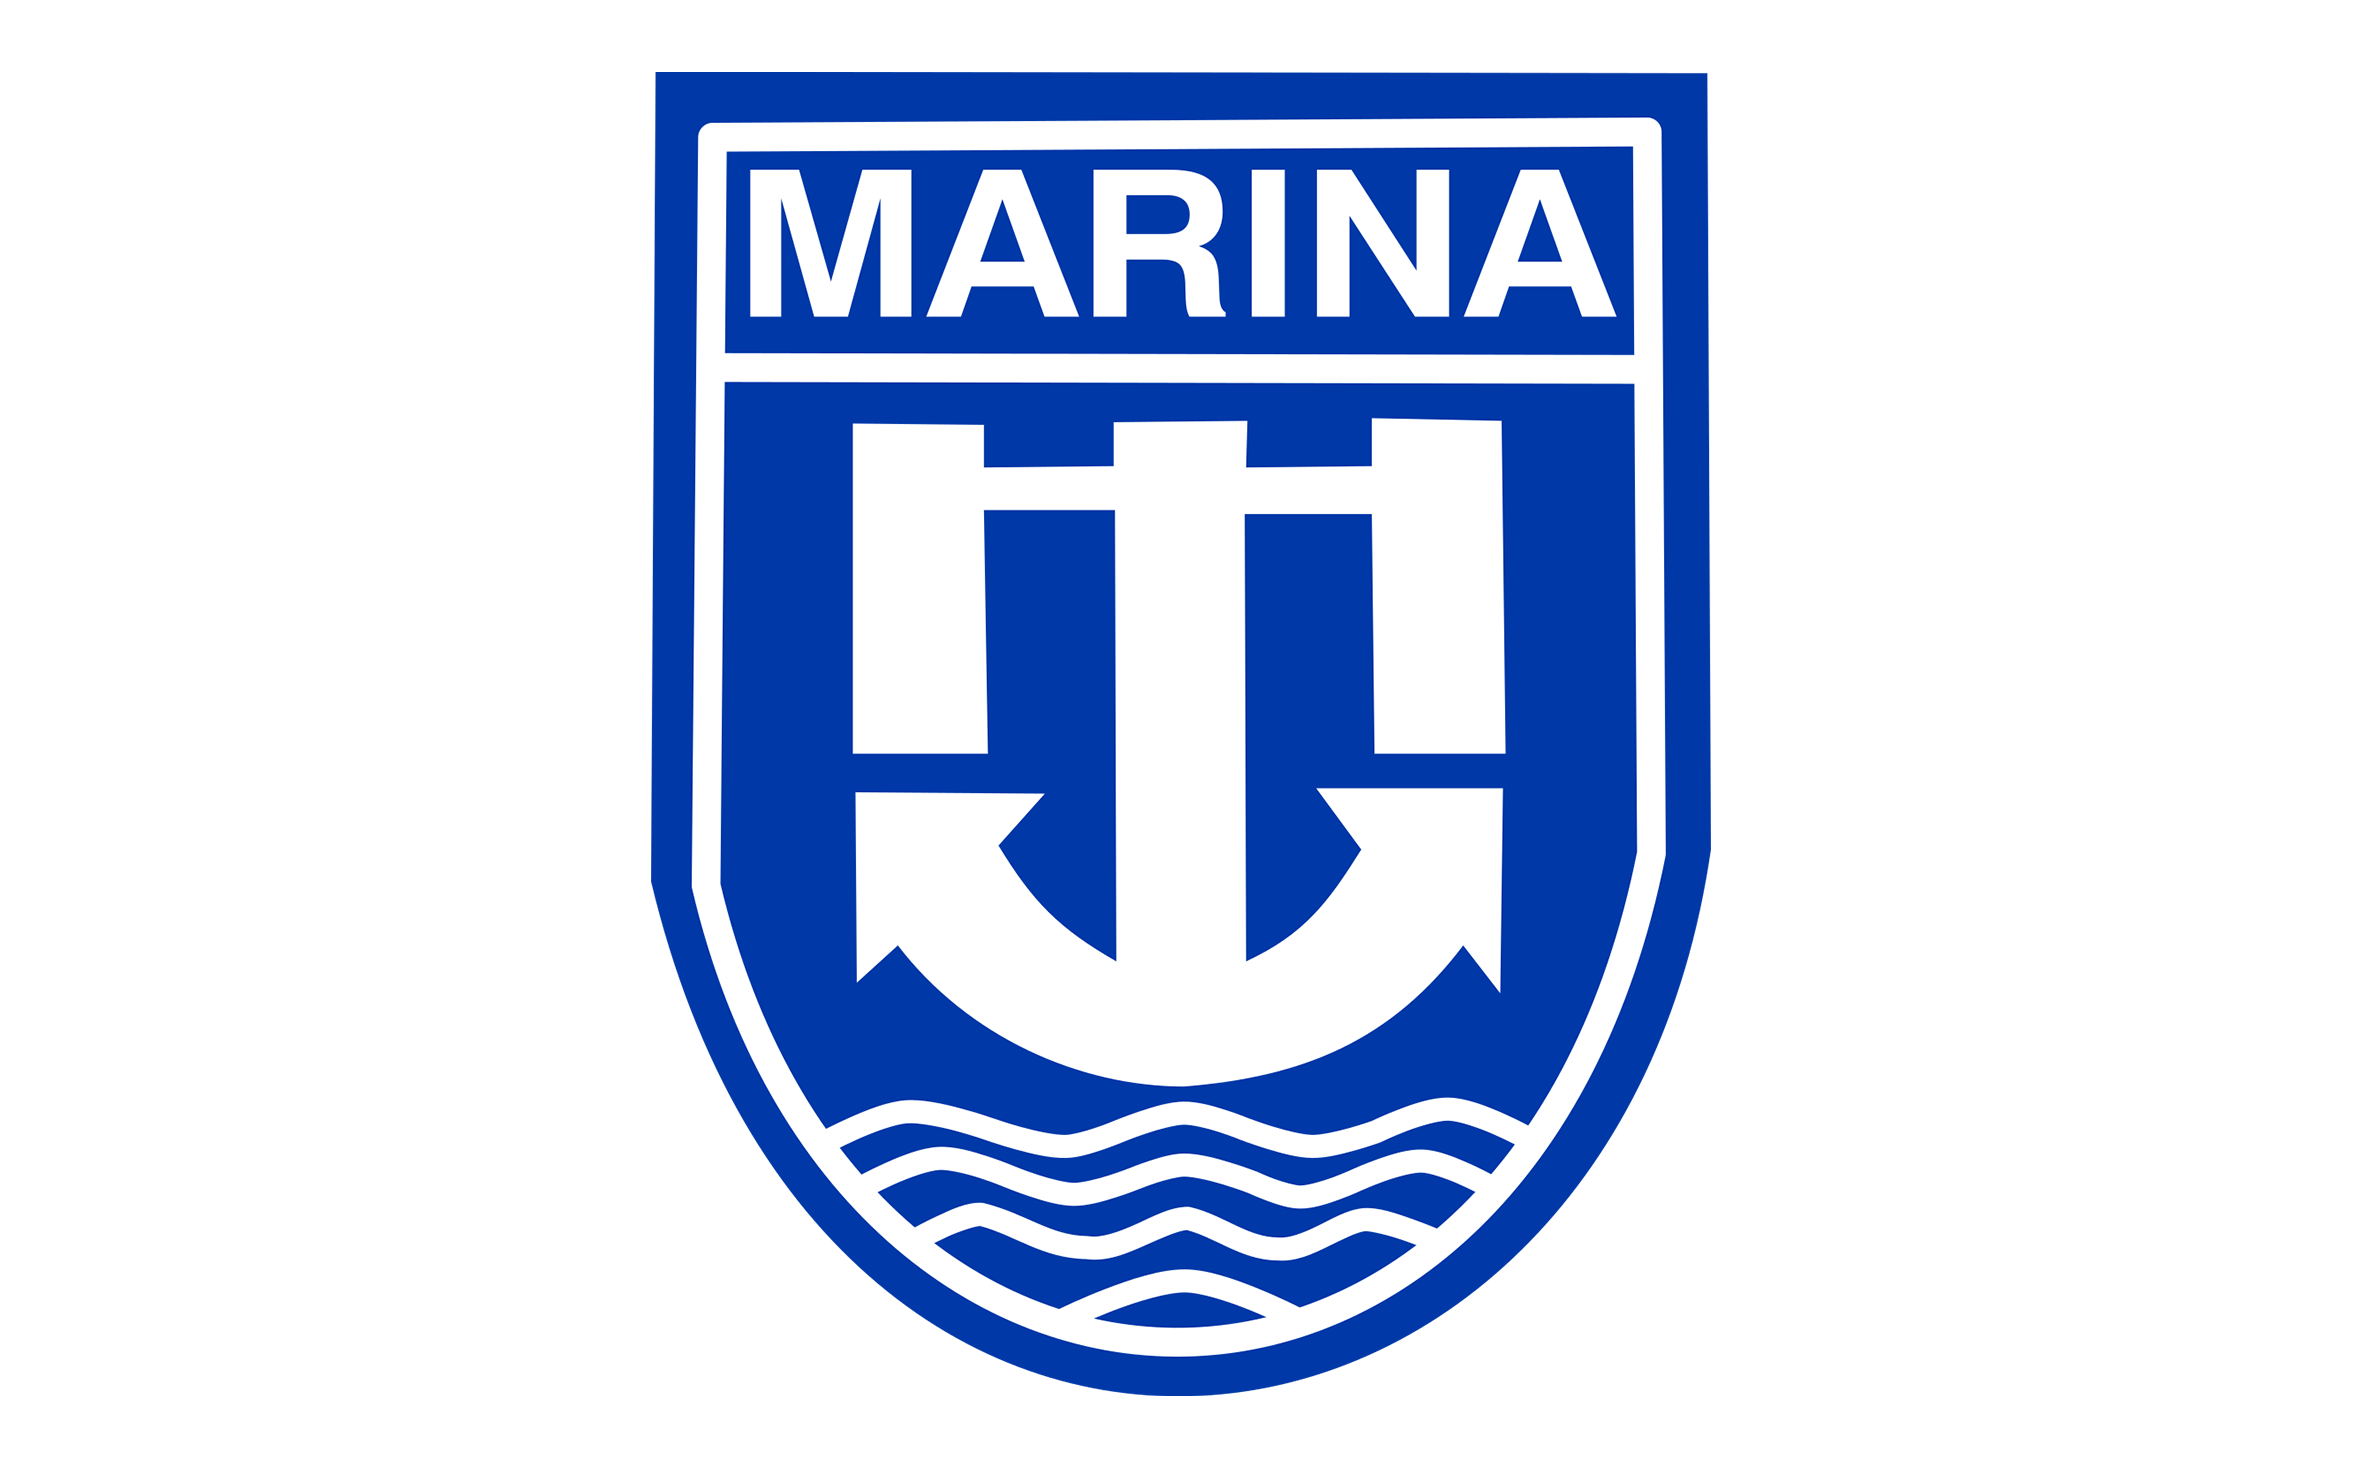 Marina Certificate